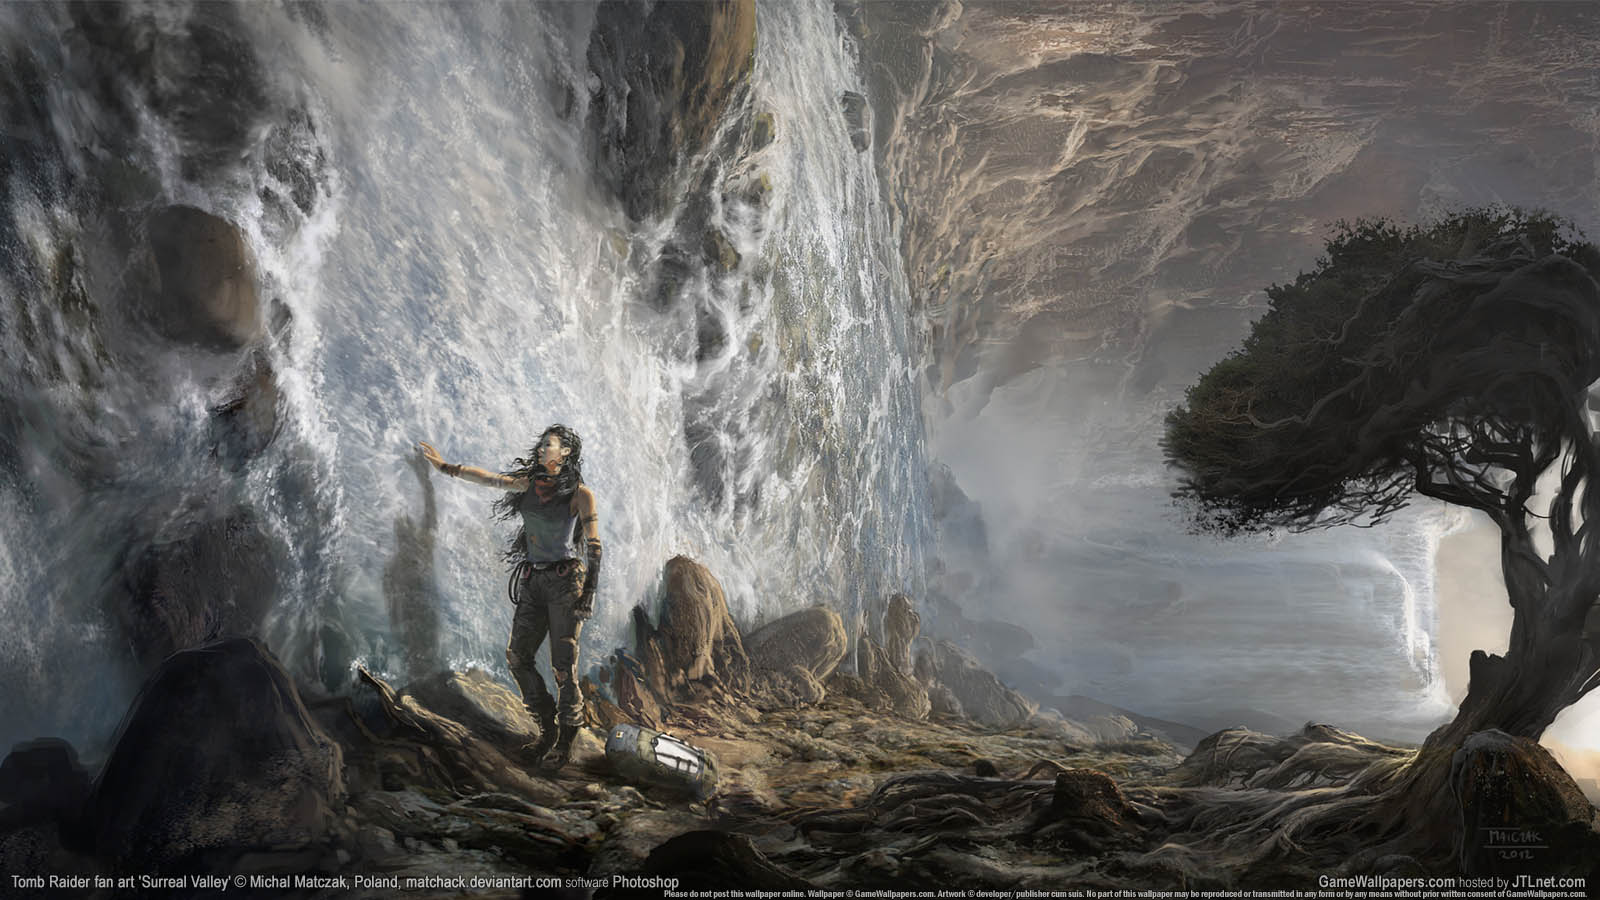 Tomb Raider fan art wallpaper 06 1600x900